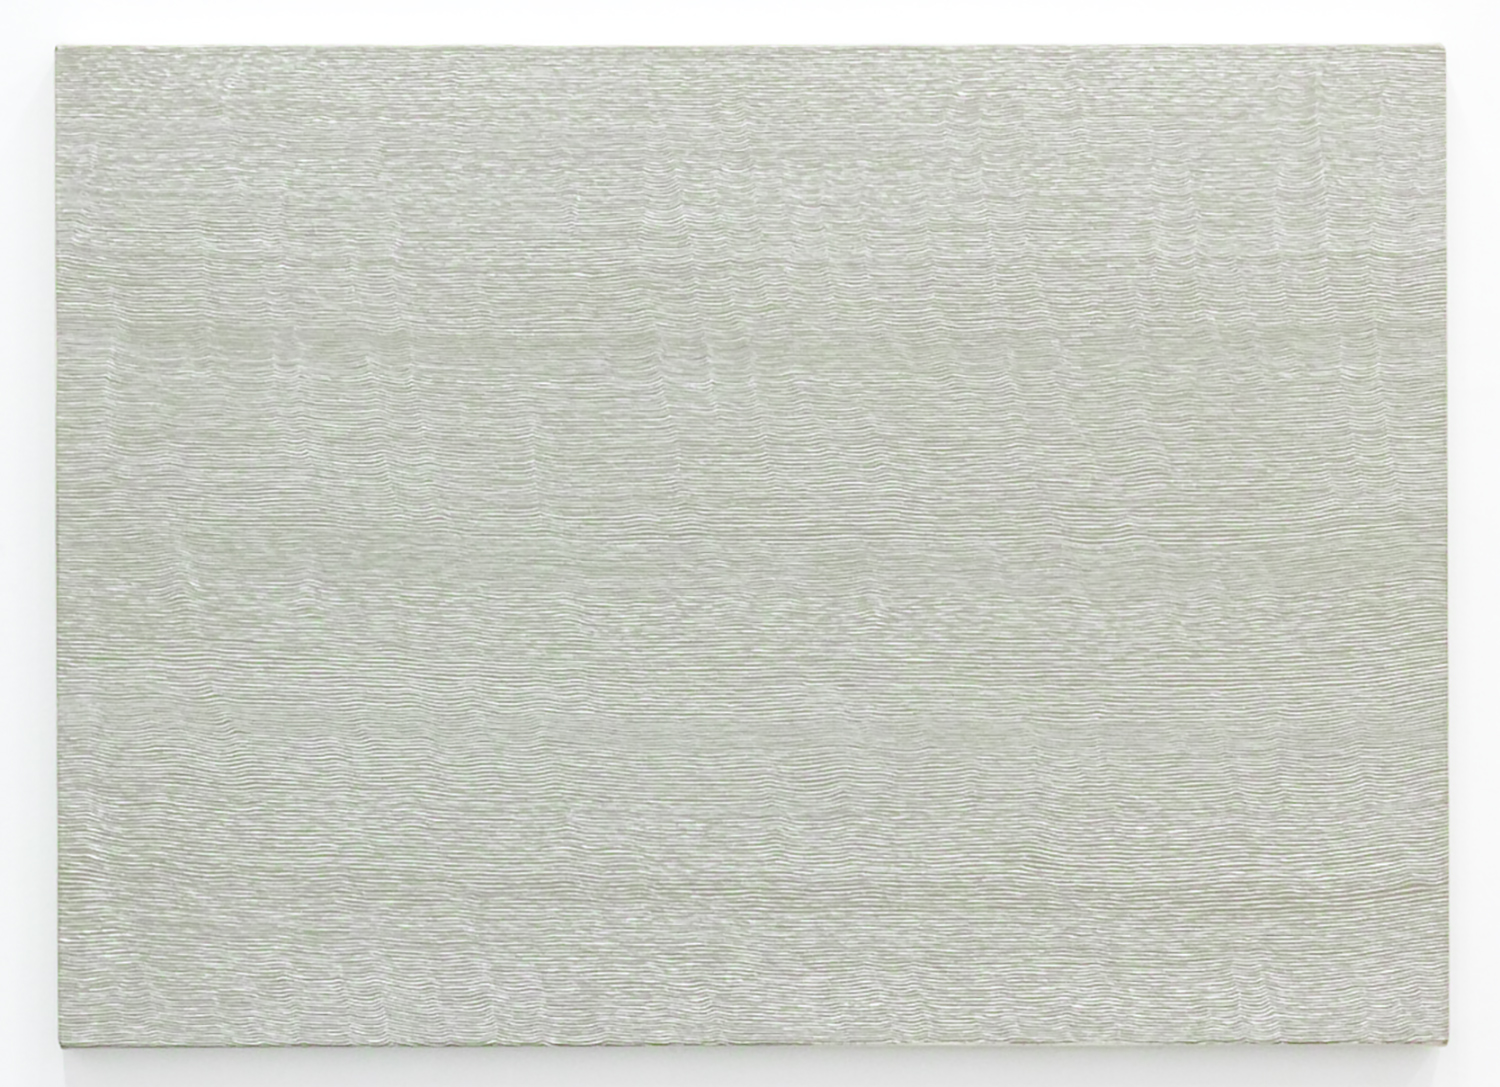 Untitled-Breath Warm gray<br>Acrylic & gesso on canvas, 56.5 x 78 cm 1996